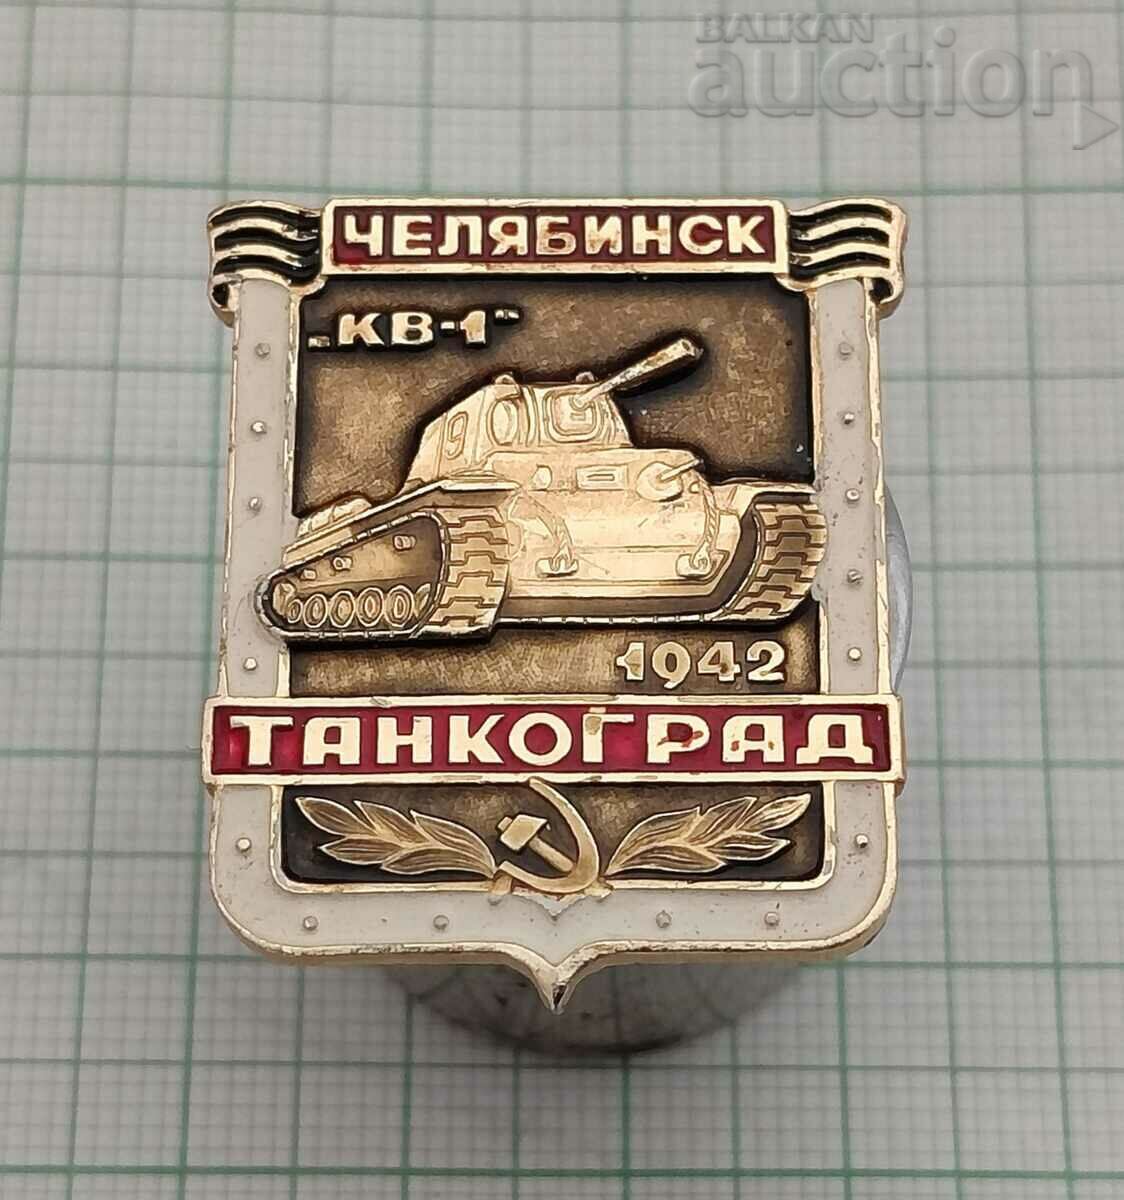 TANK T-34 KV-1 CHELYABINSK 1942 BADGE